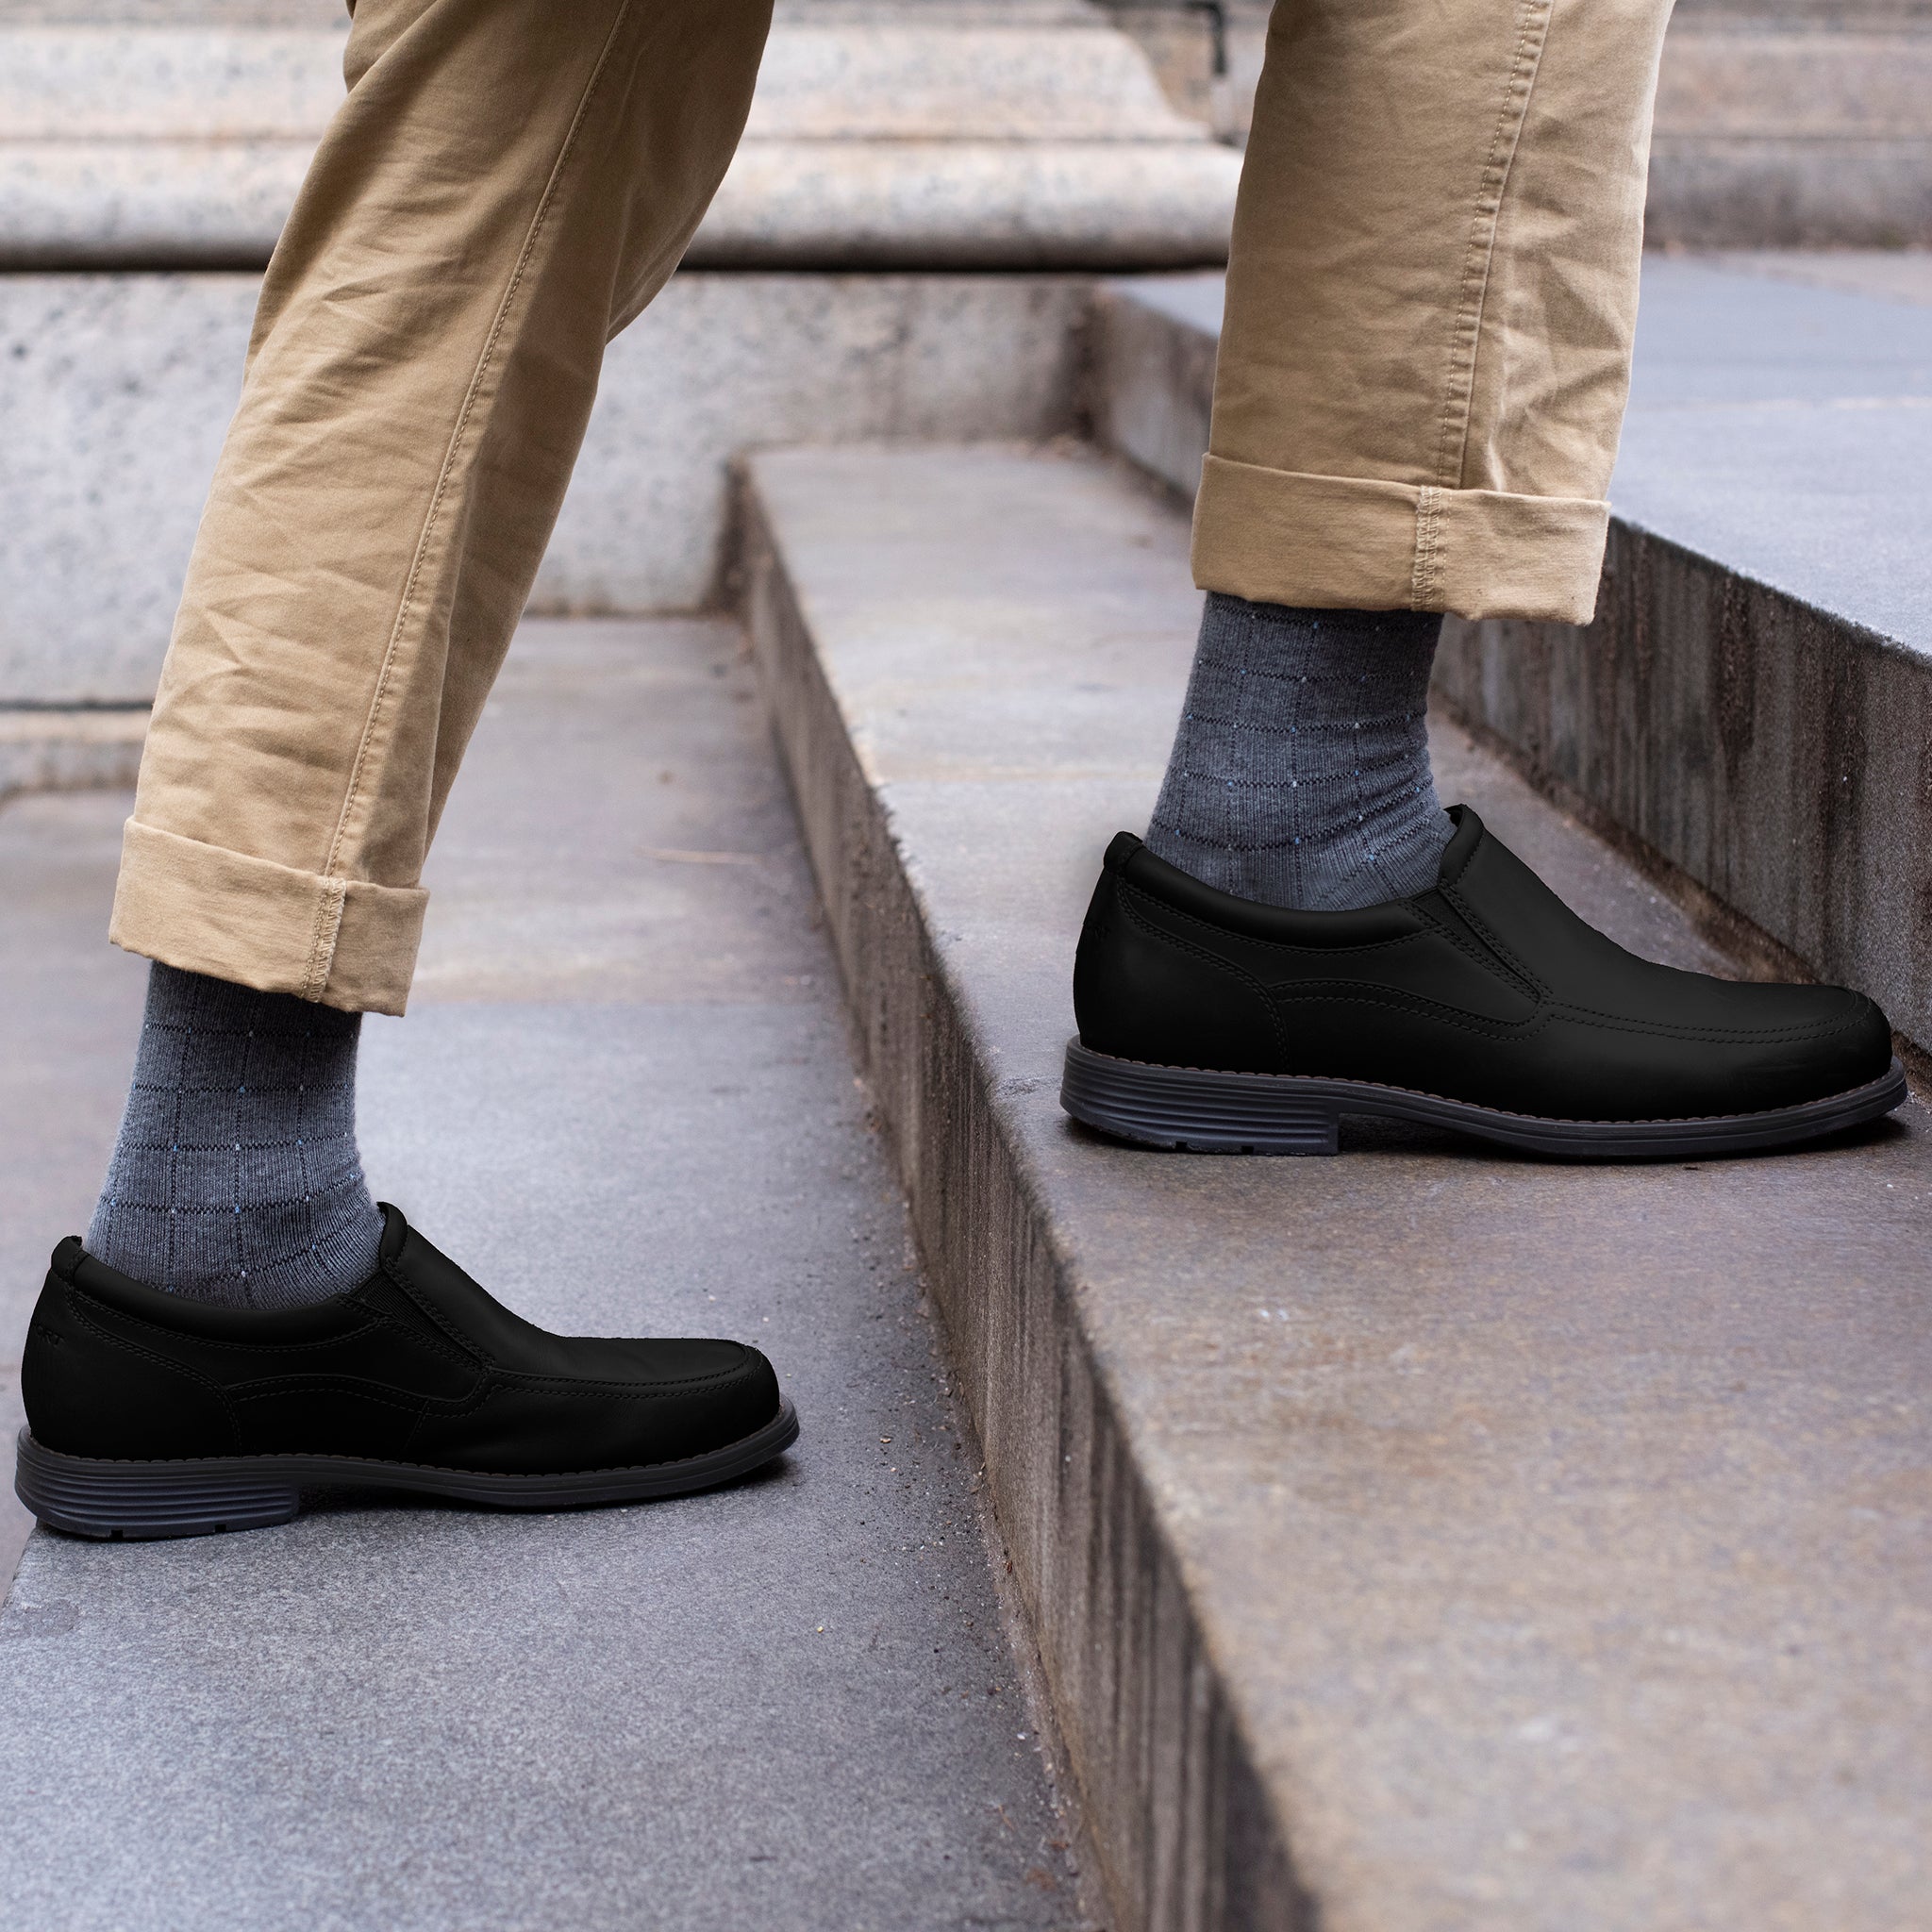 Pin Dot Grid | Knee-High Compression Socks For Men